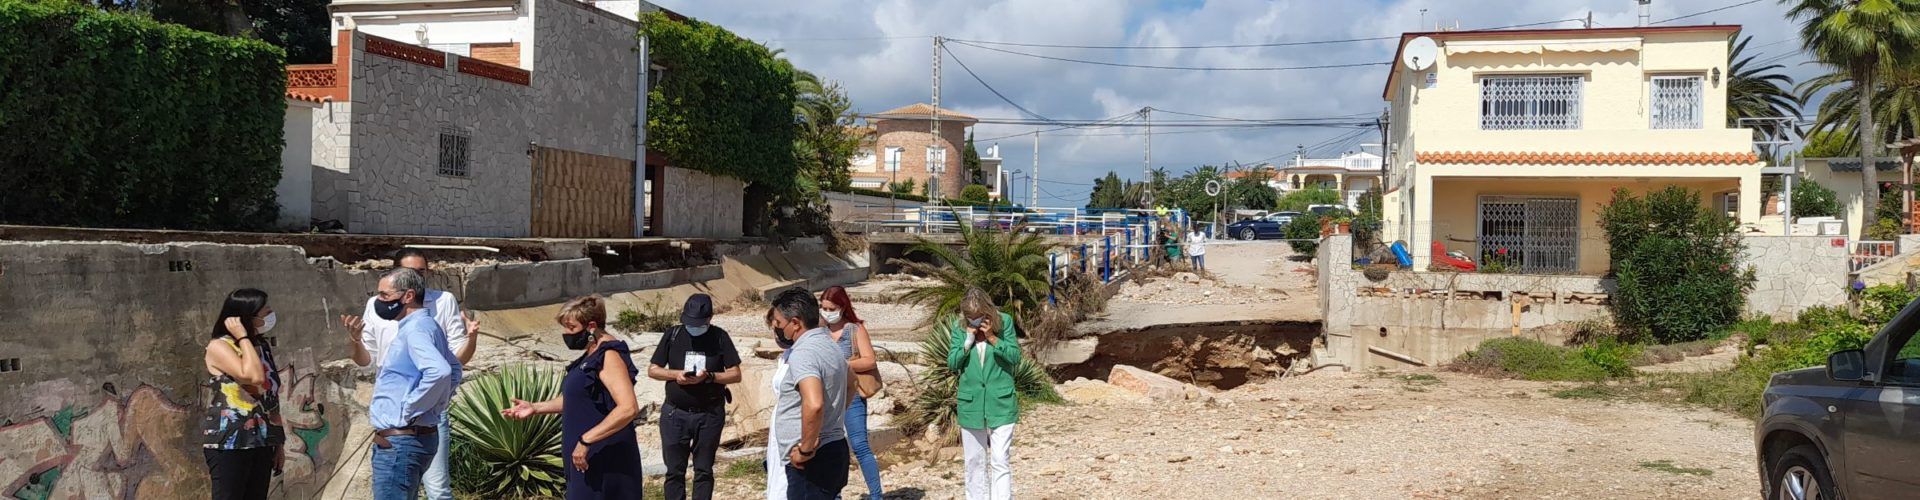 Alcanar y Vinaròs, aprobadas por el Consejo de Ministros como zonas afectadas gravemente por emergencias